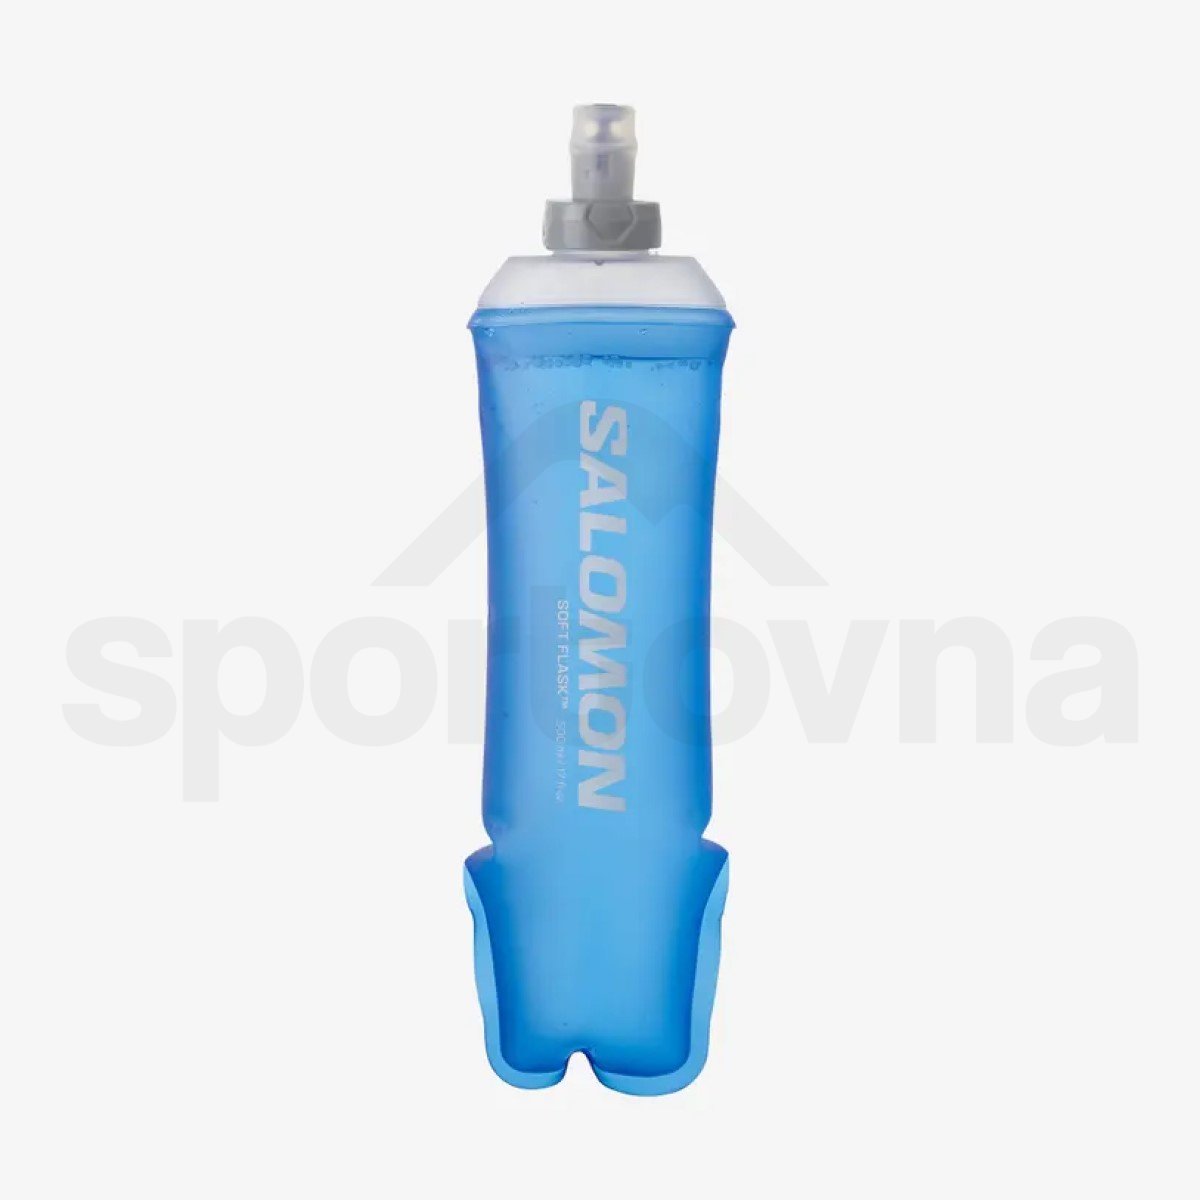 Batoh Salomon Active Skin 4 with flasks - černá